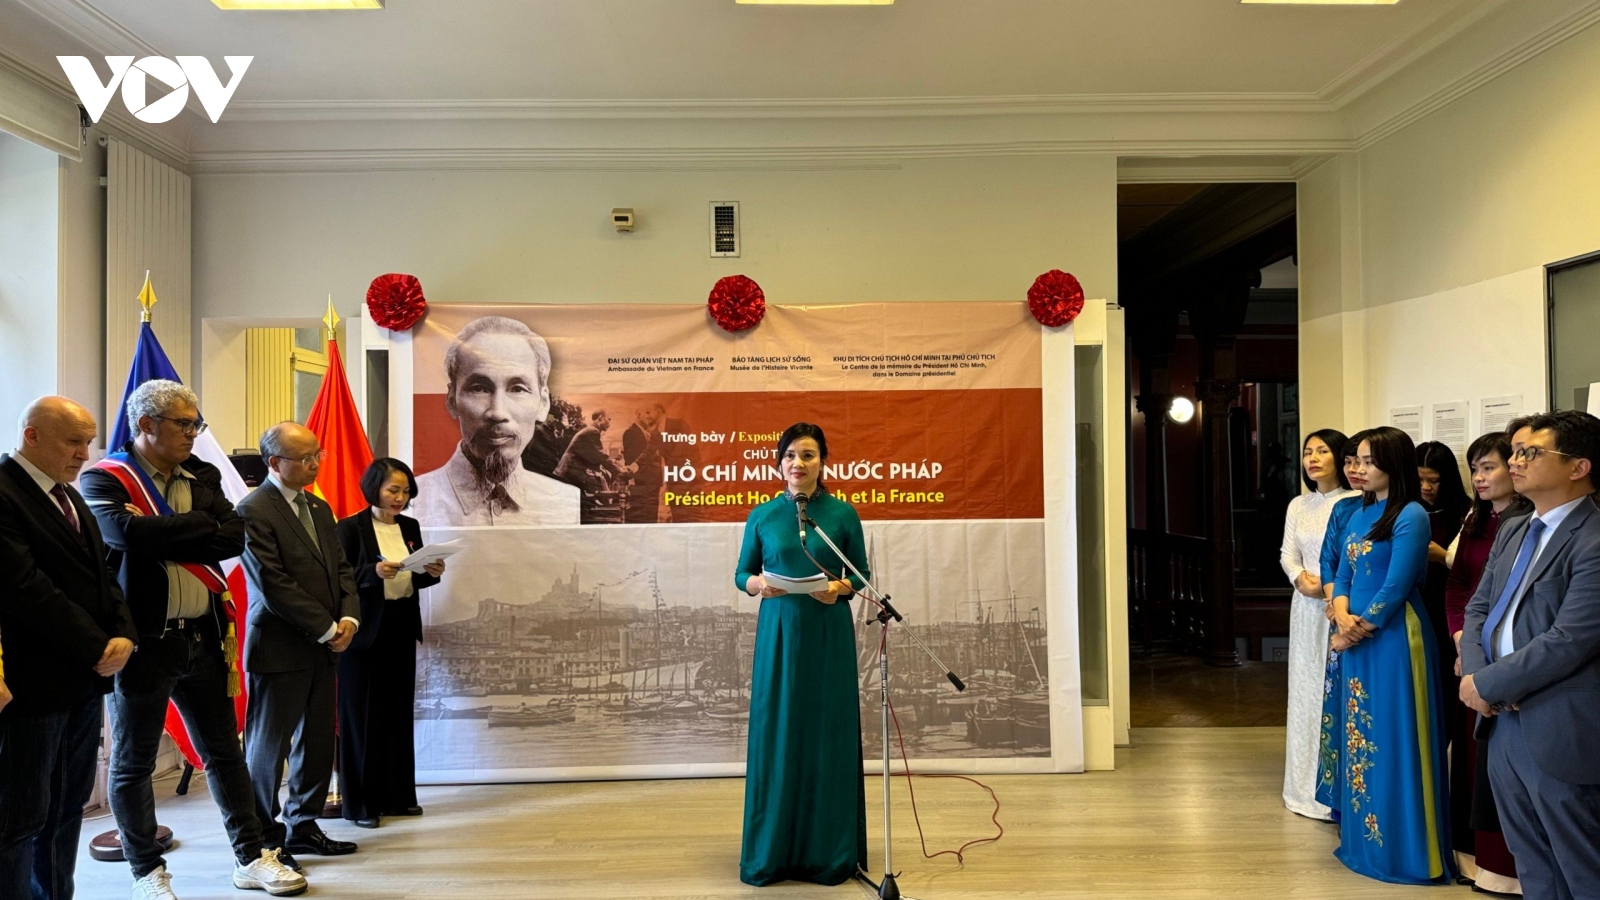 Khai mạc triển lãm "Chủ tịch Hồ Chí Minh và nước Pháp"